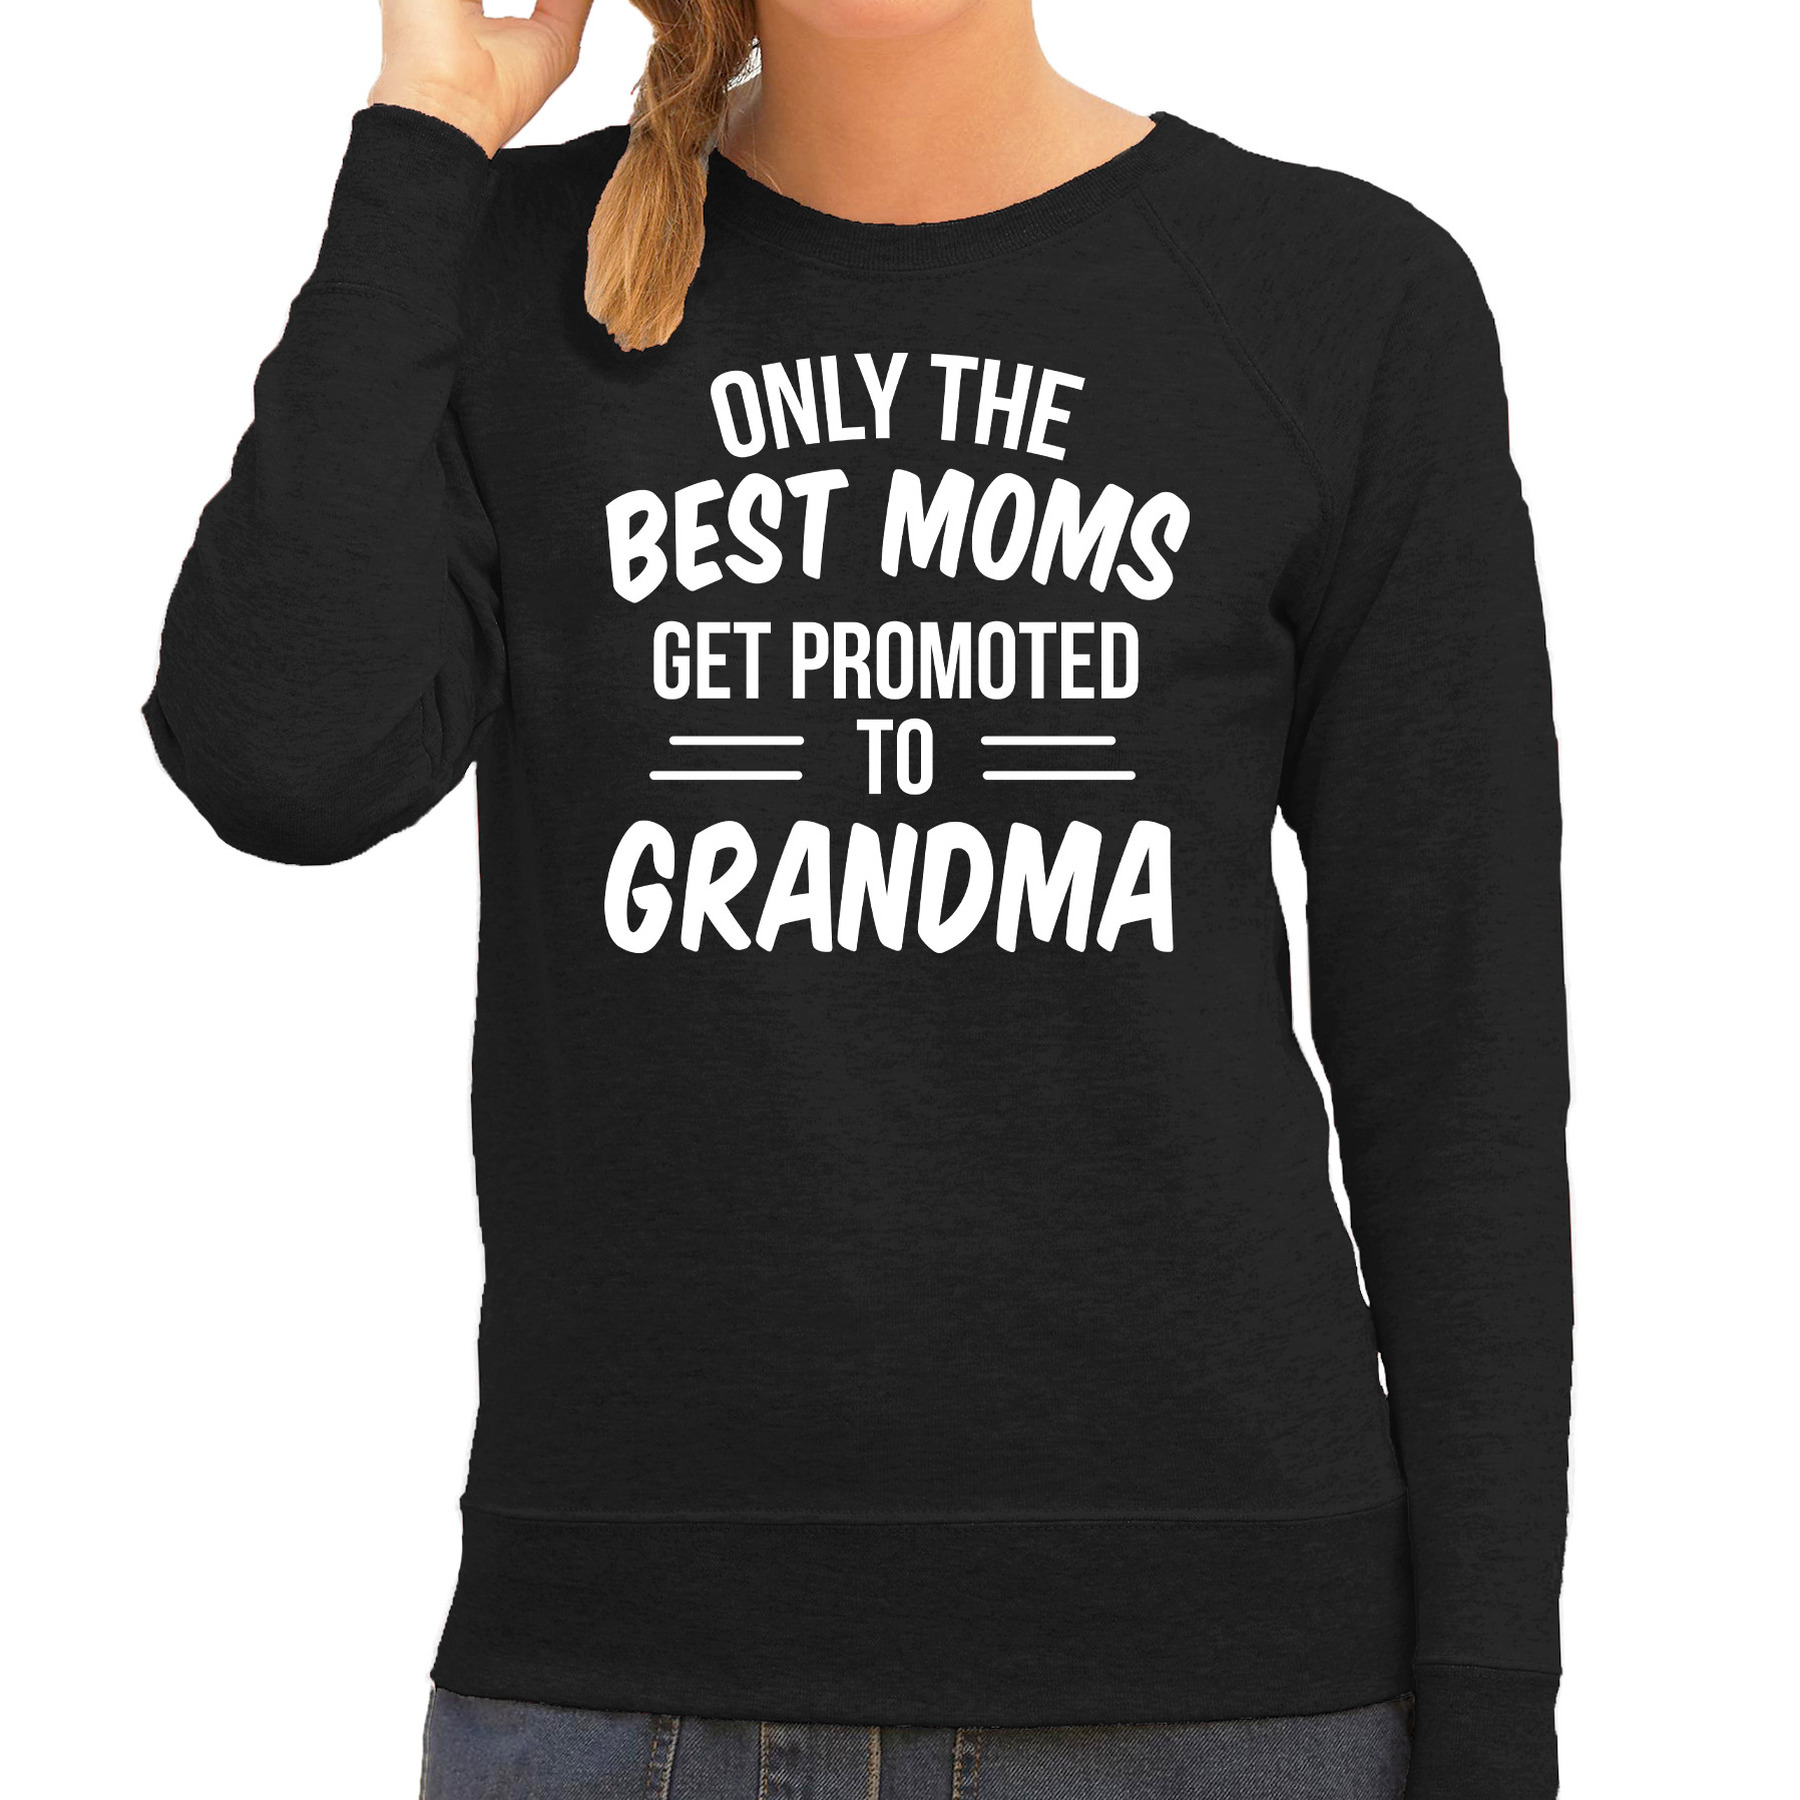 Only the best moms get promoted to grandma sweater-trui zwart voor dames moederdag cadeau truien